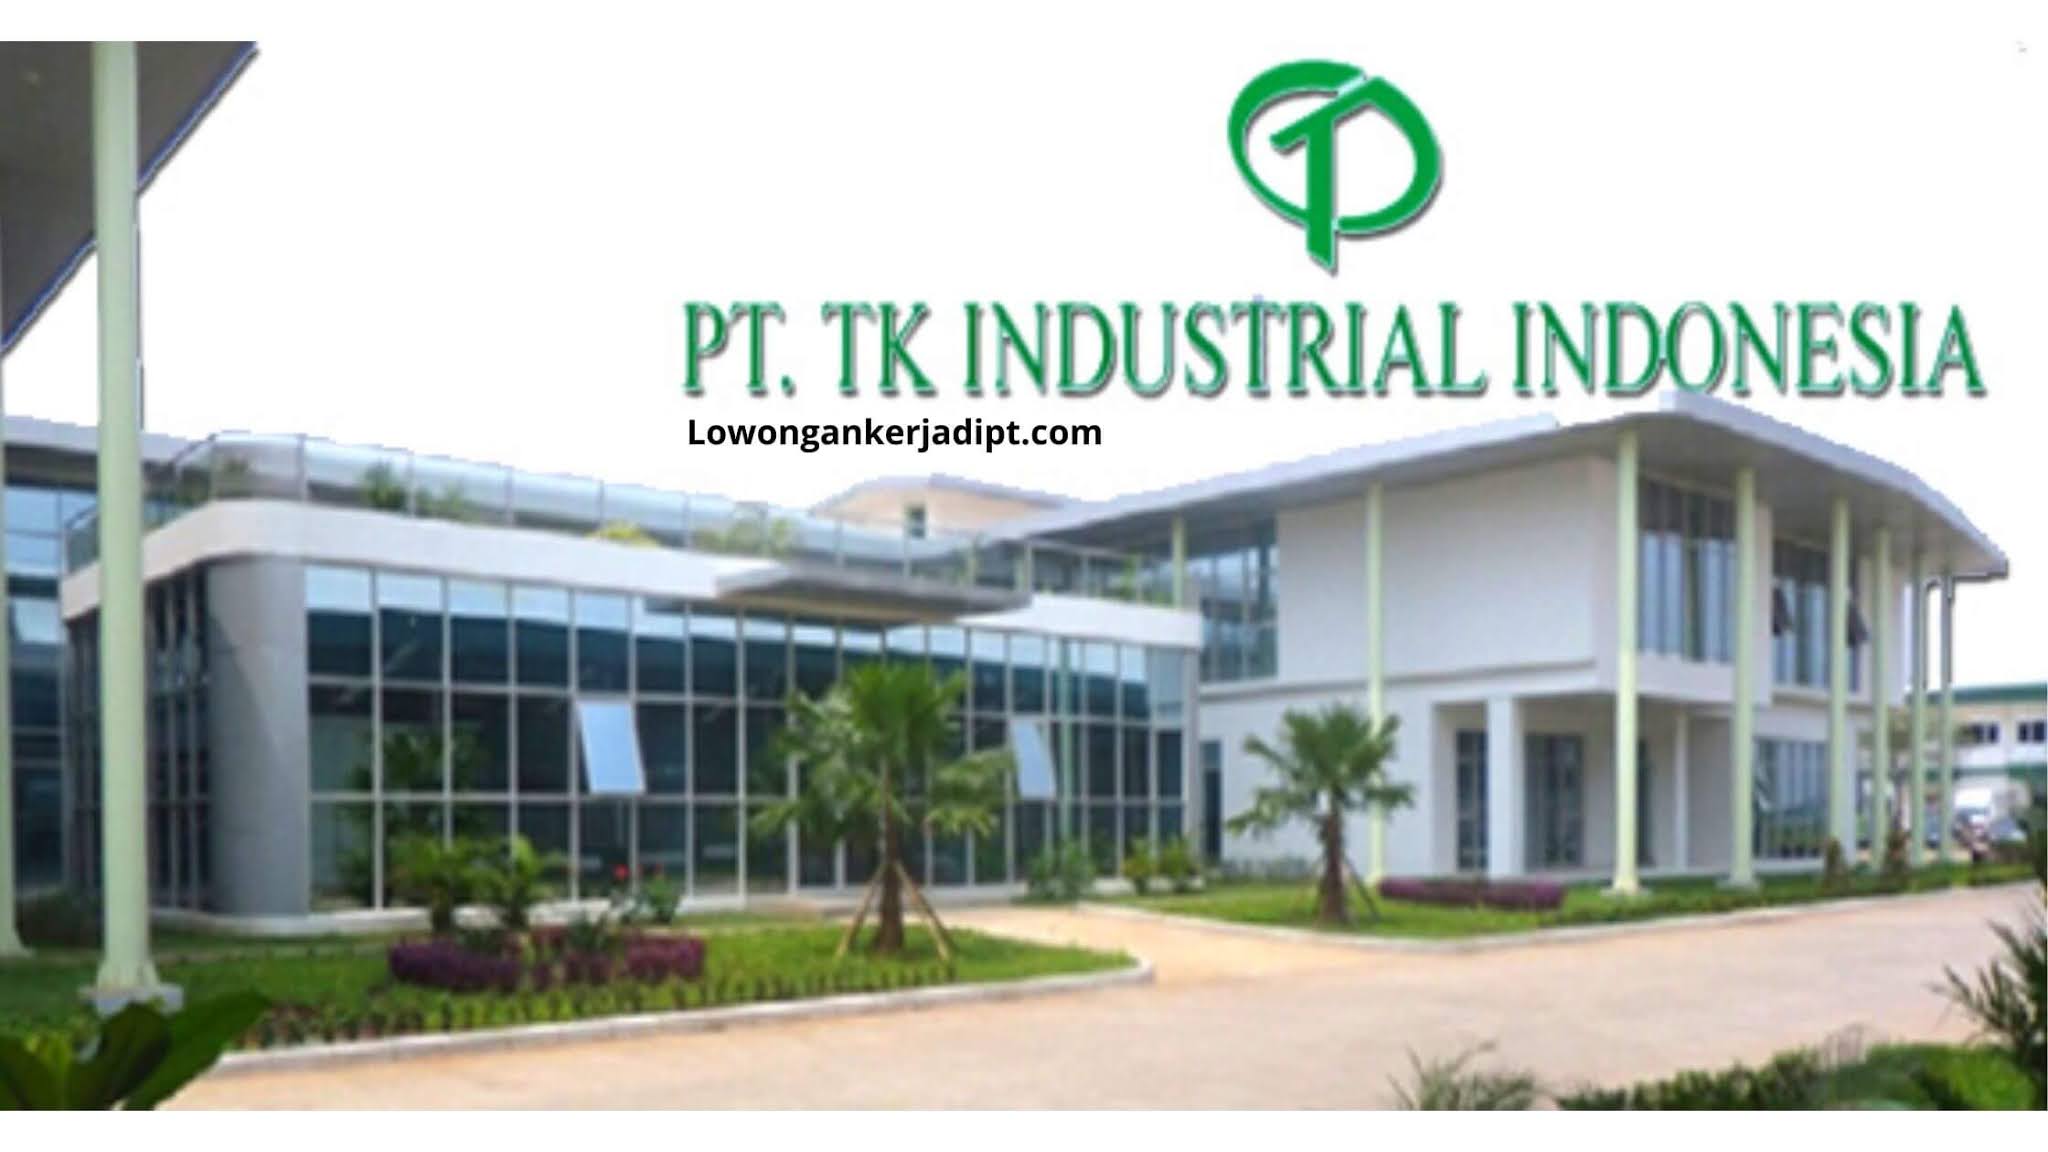 Lowongan Kerja PT TK Industrial Indonesia (Taekwang) - Lowongankerjadipt.com